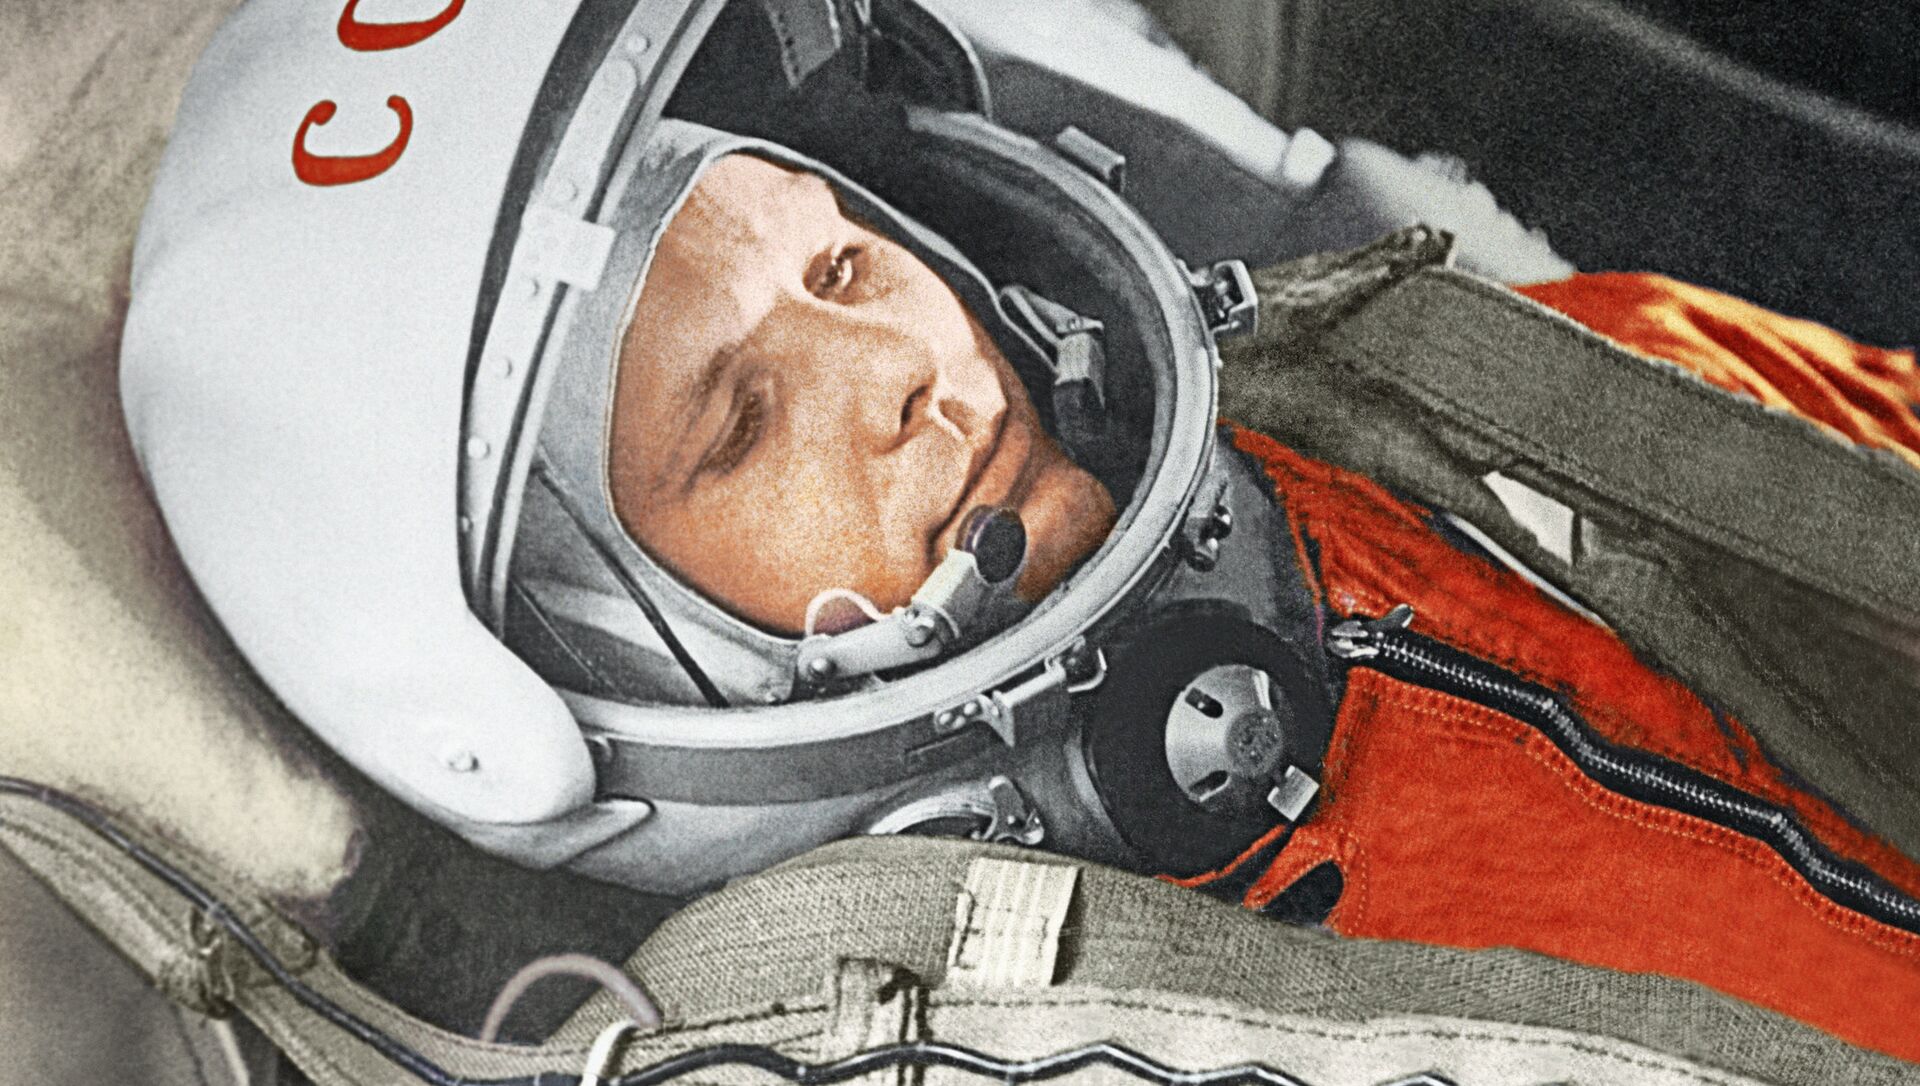 Юрий Гагарин в кабине космического корабля “Восток” во время первого в мире орбитального космического полета 12 апреля 1961 года. - Sputnik Молдова, 1920, 09.04.2021